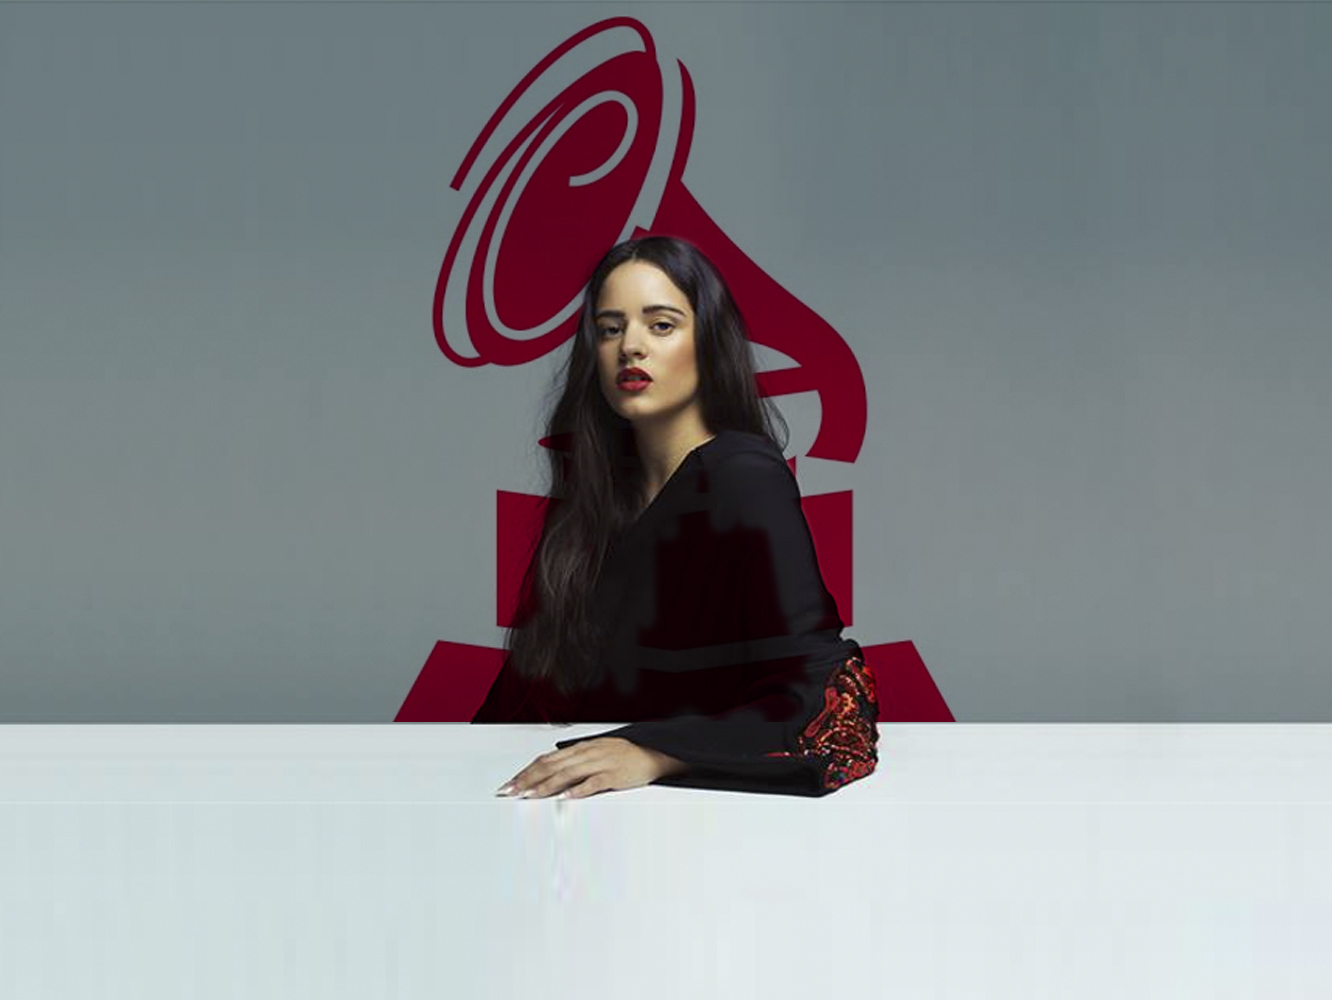  Rosalía lidera la tabla de nominados españoles a los Premios Grammy Latinos 2018